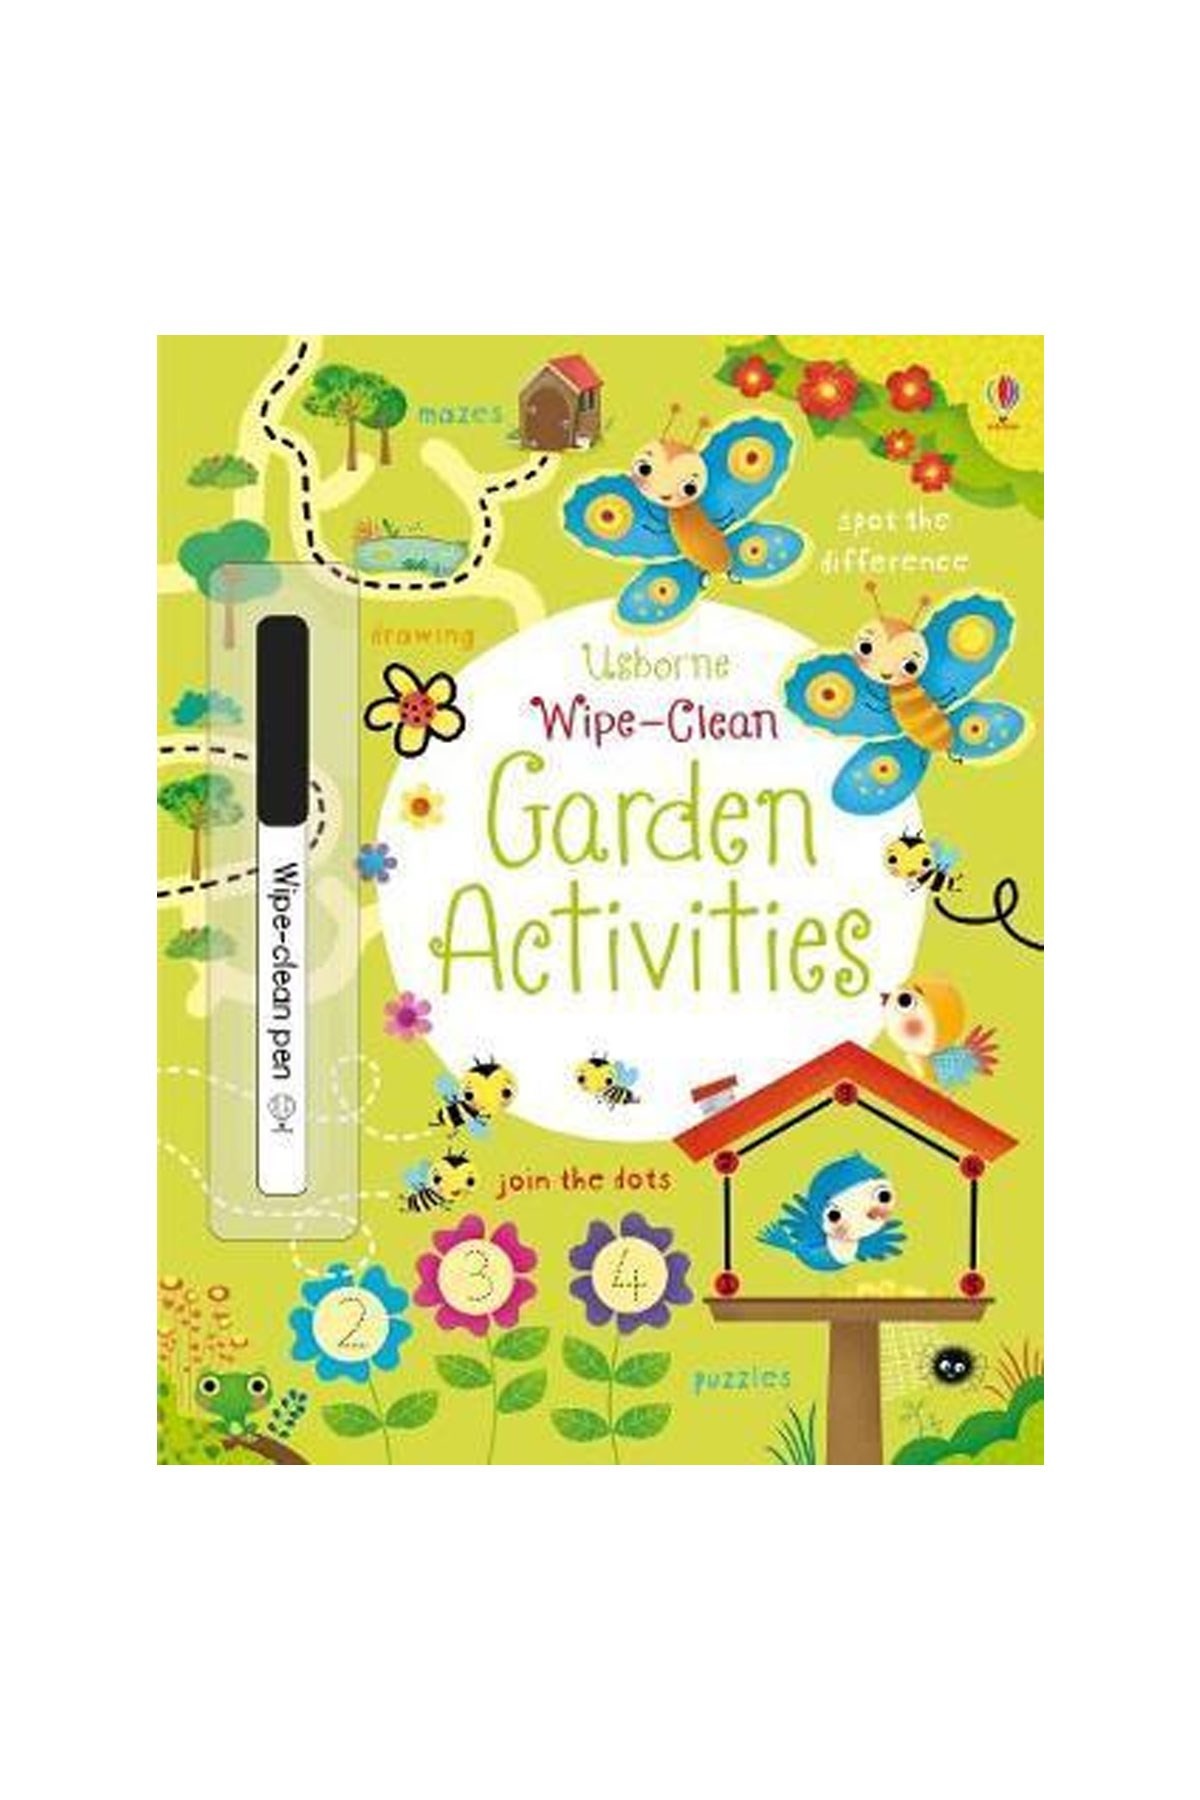 The Usborne Wipe-Clean Garden Activities